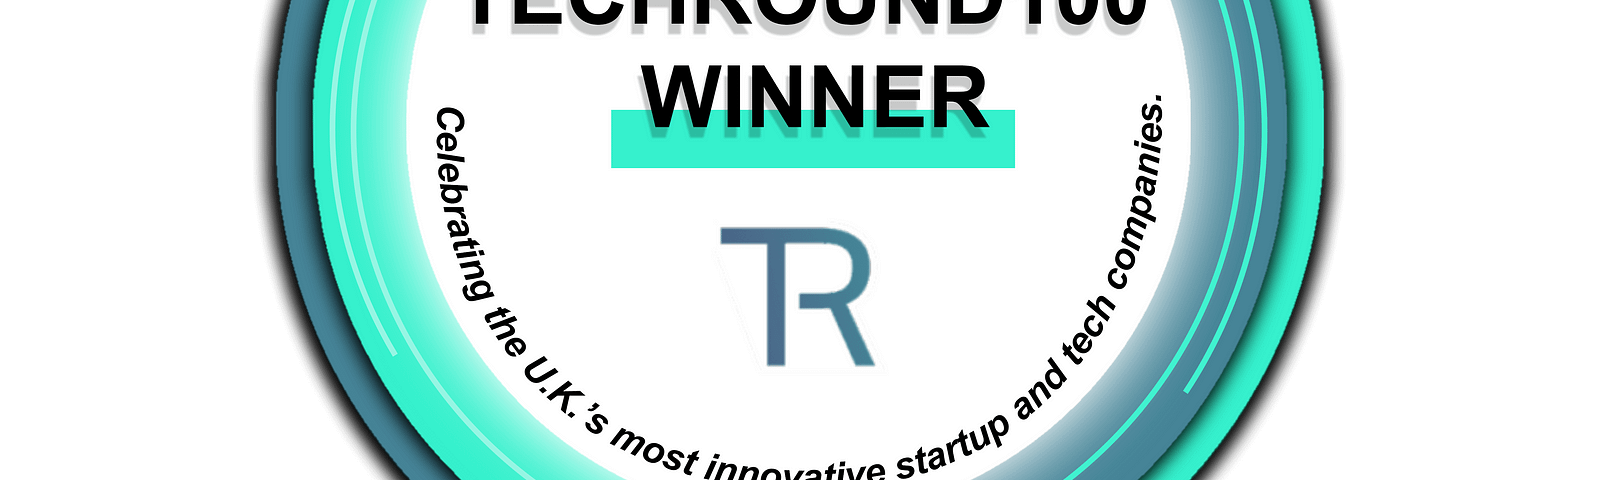 Challenge Accepted TechRound 100 Winner